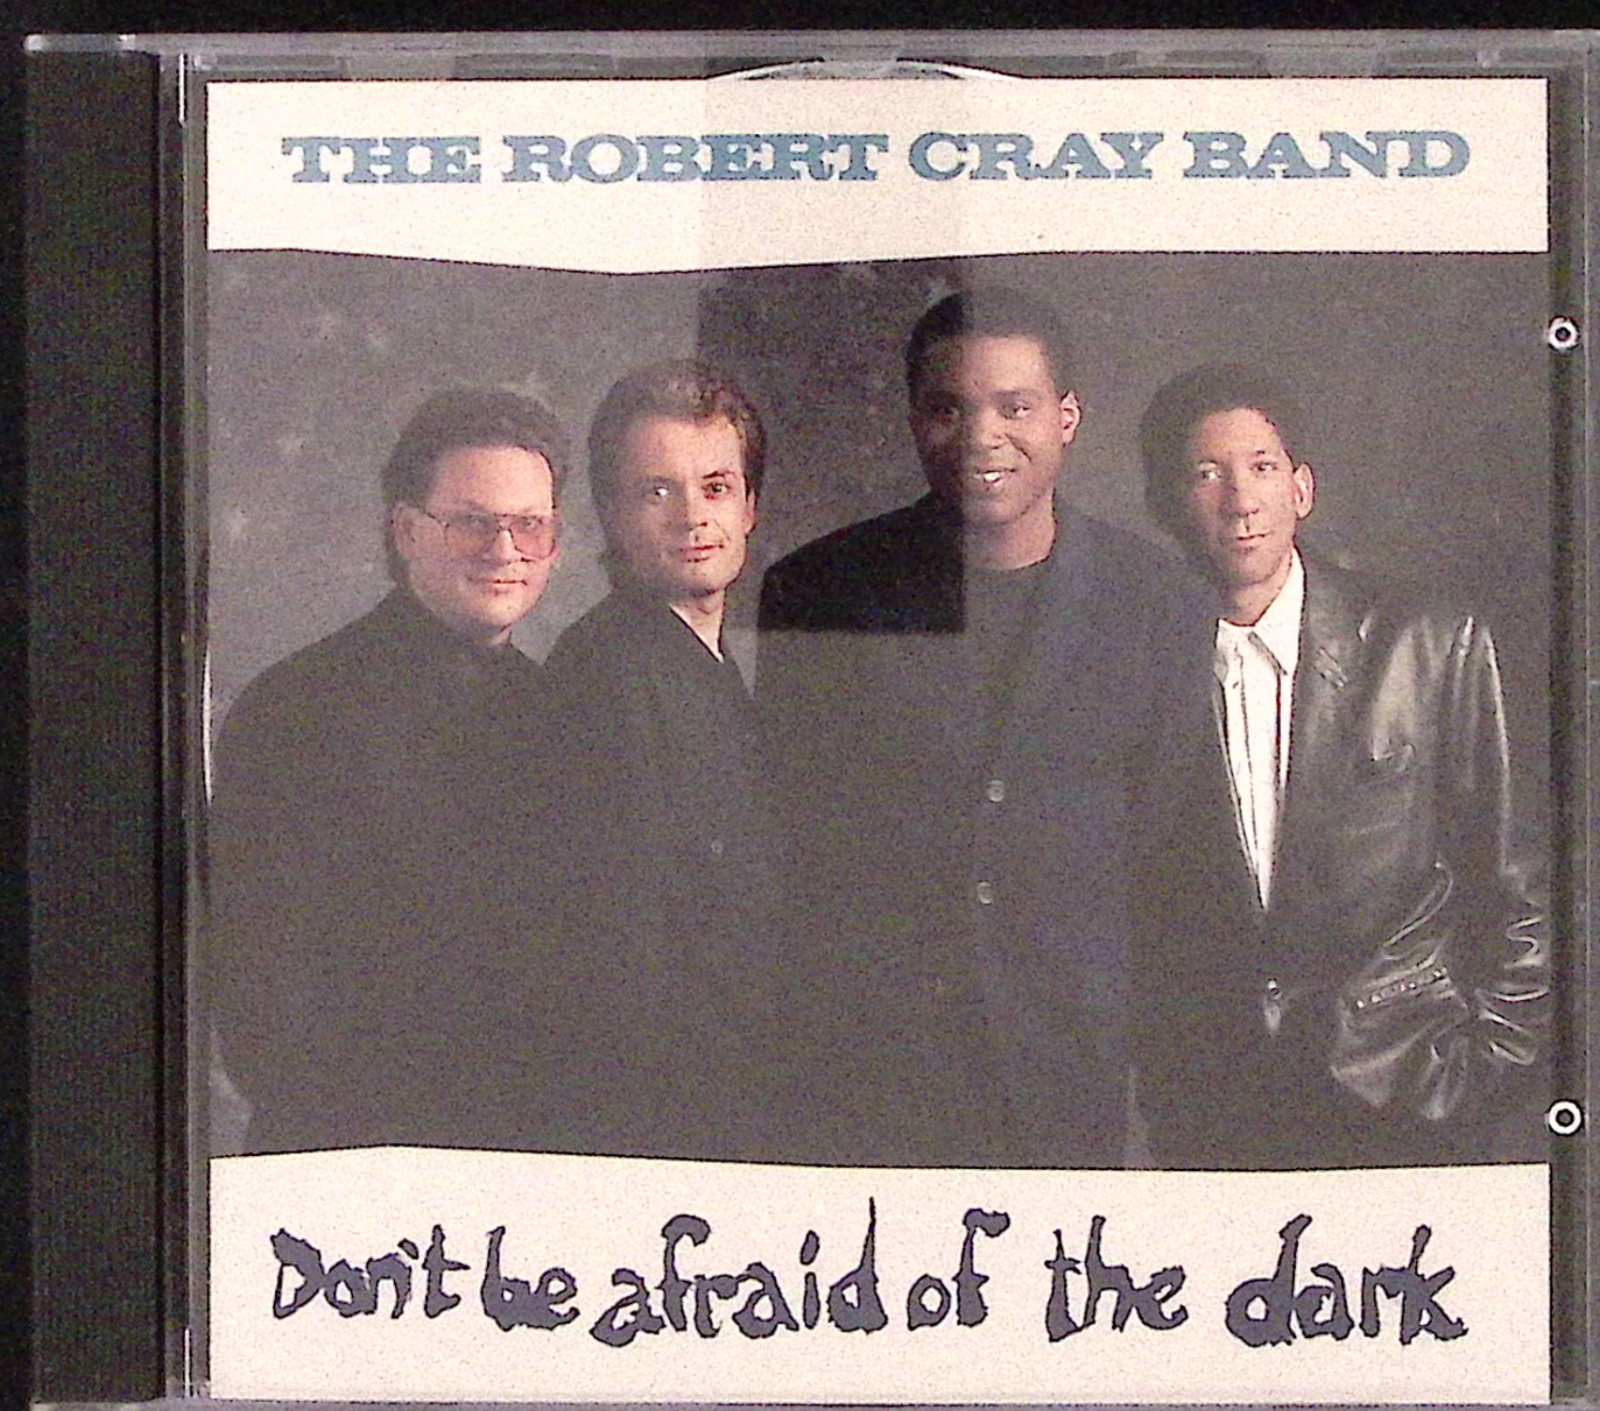 THE ROBERT CRAY BAND  DON'T BE AFRAID OF THE DARK  HIGHTONE/MERCURY 1988  CD1044